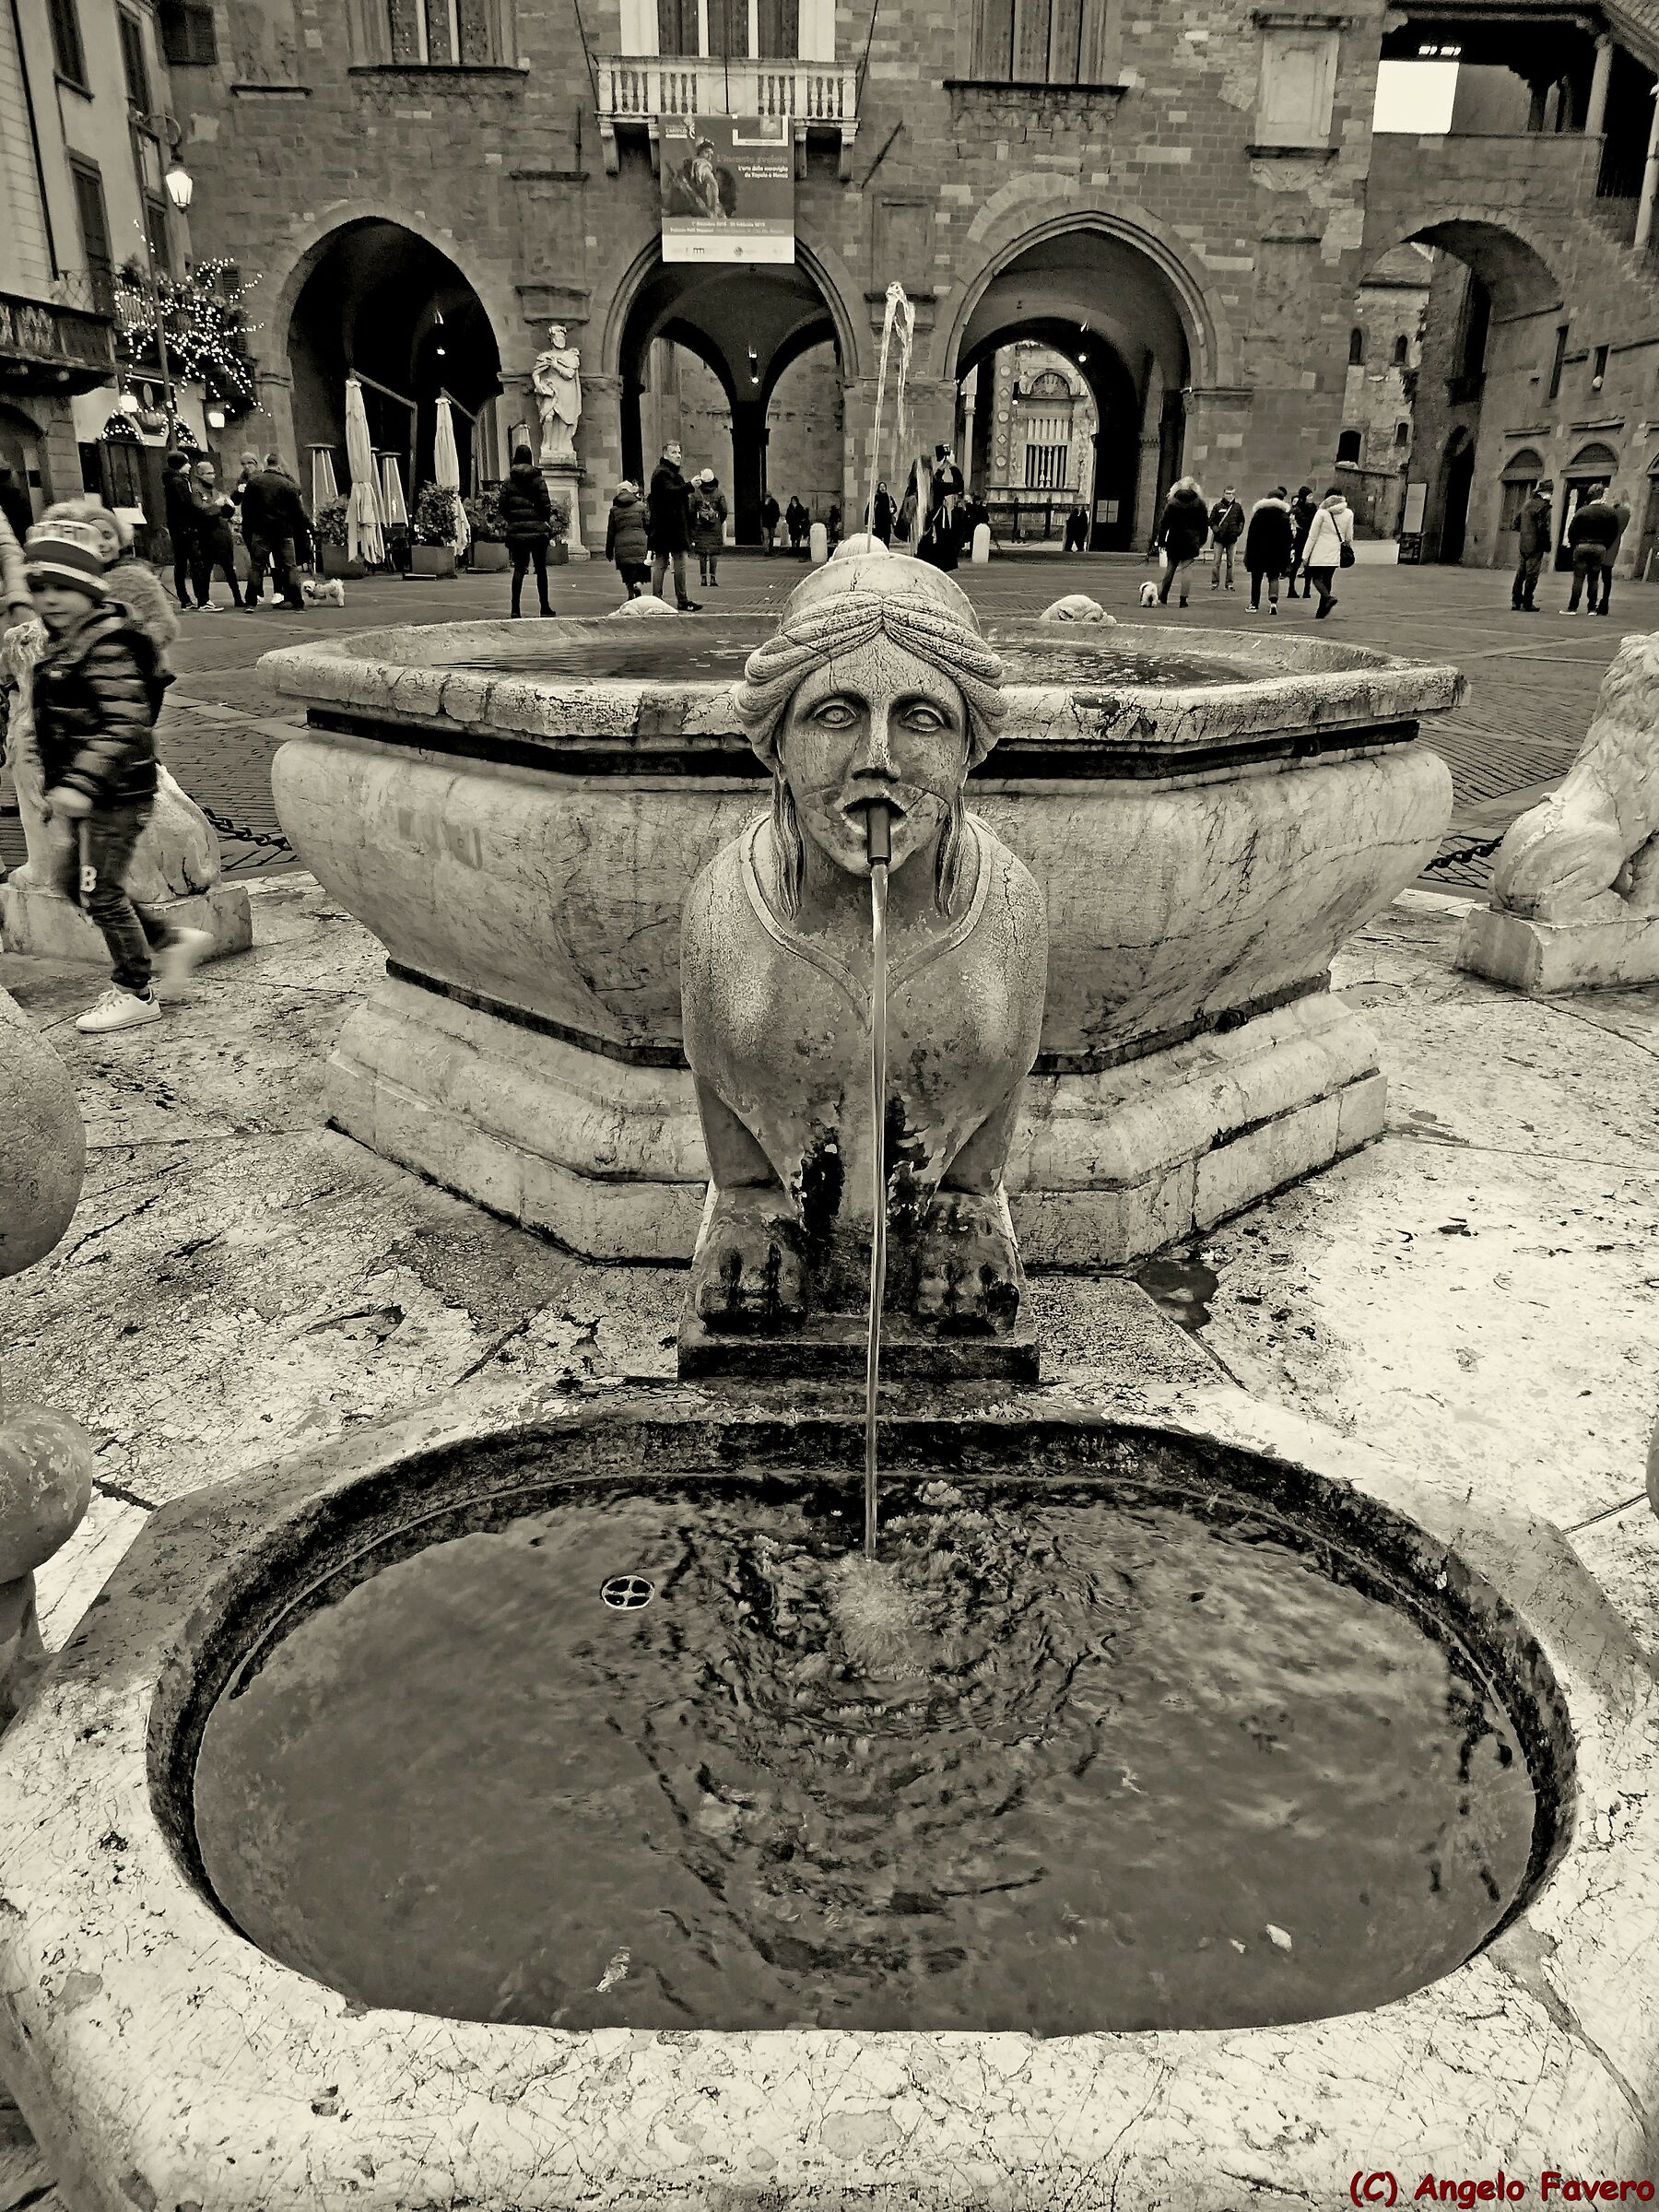  Bergamo - fountain of old square...